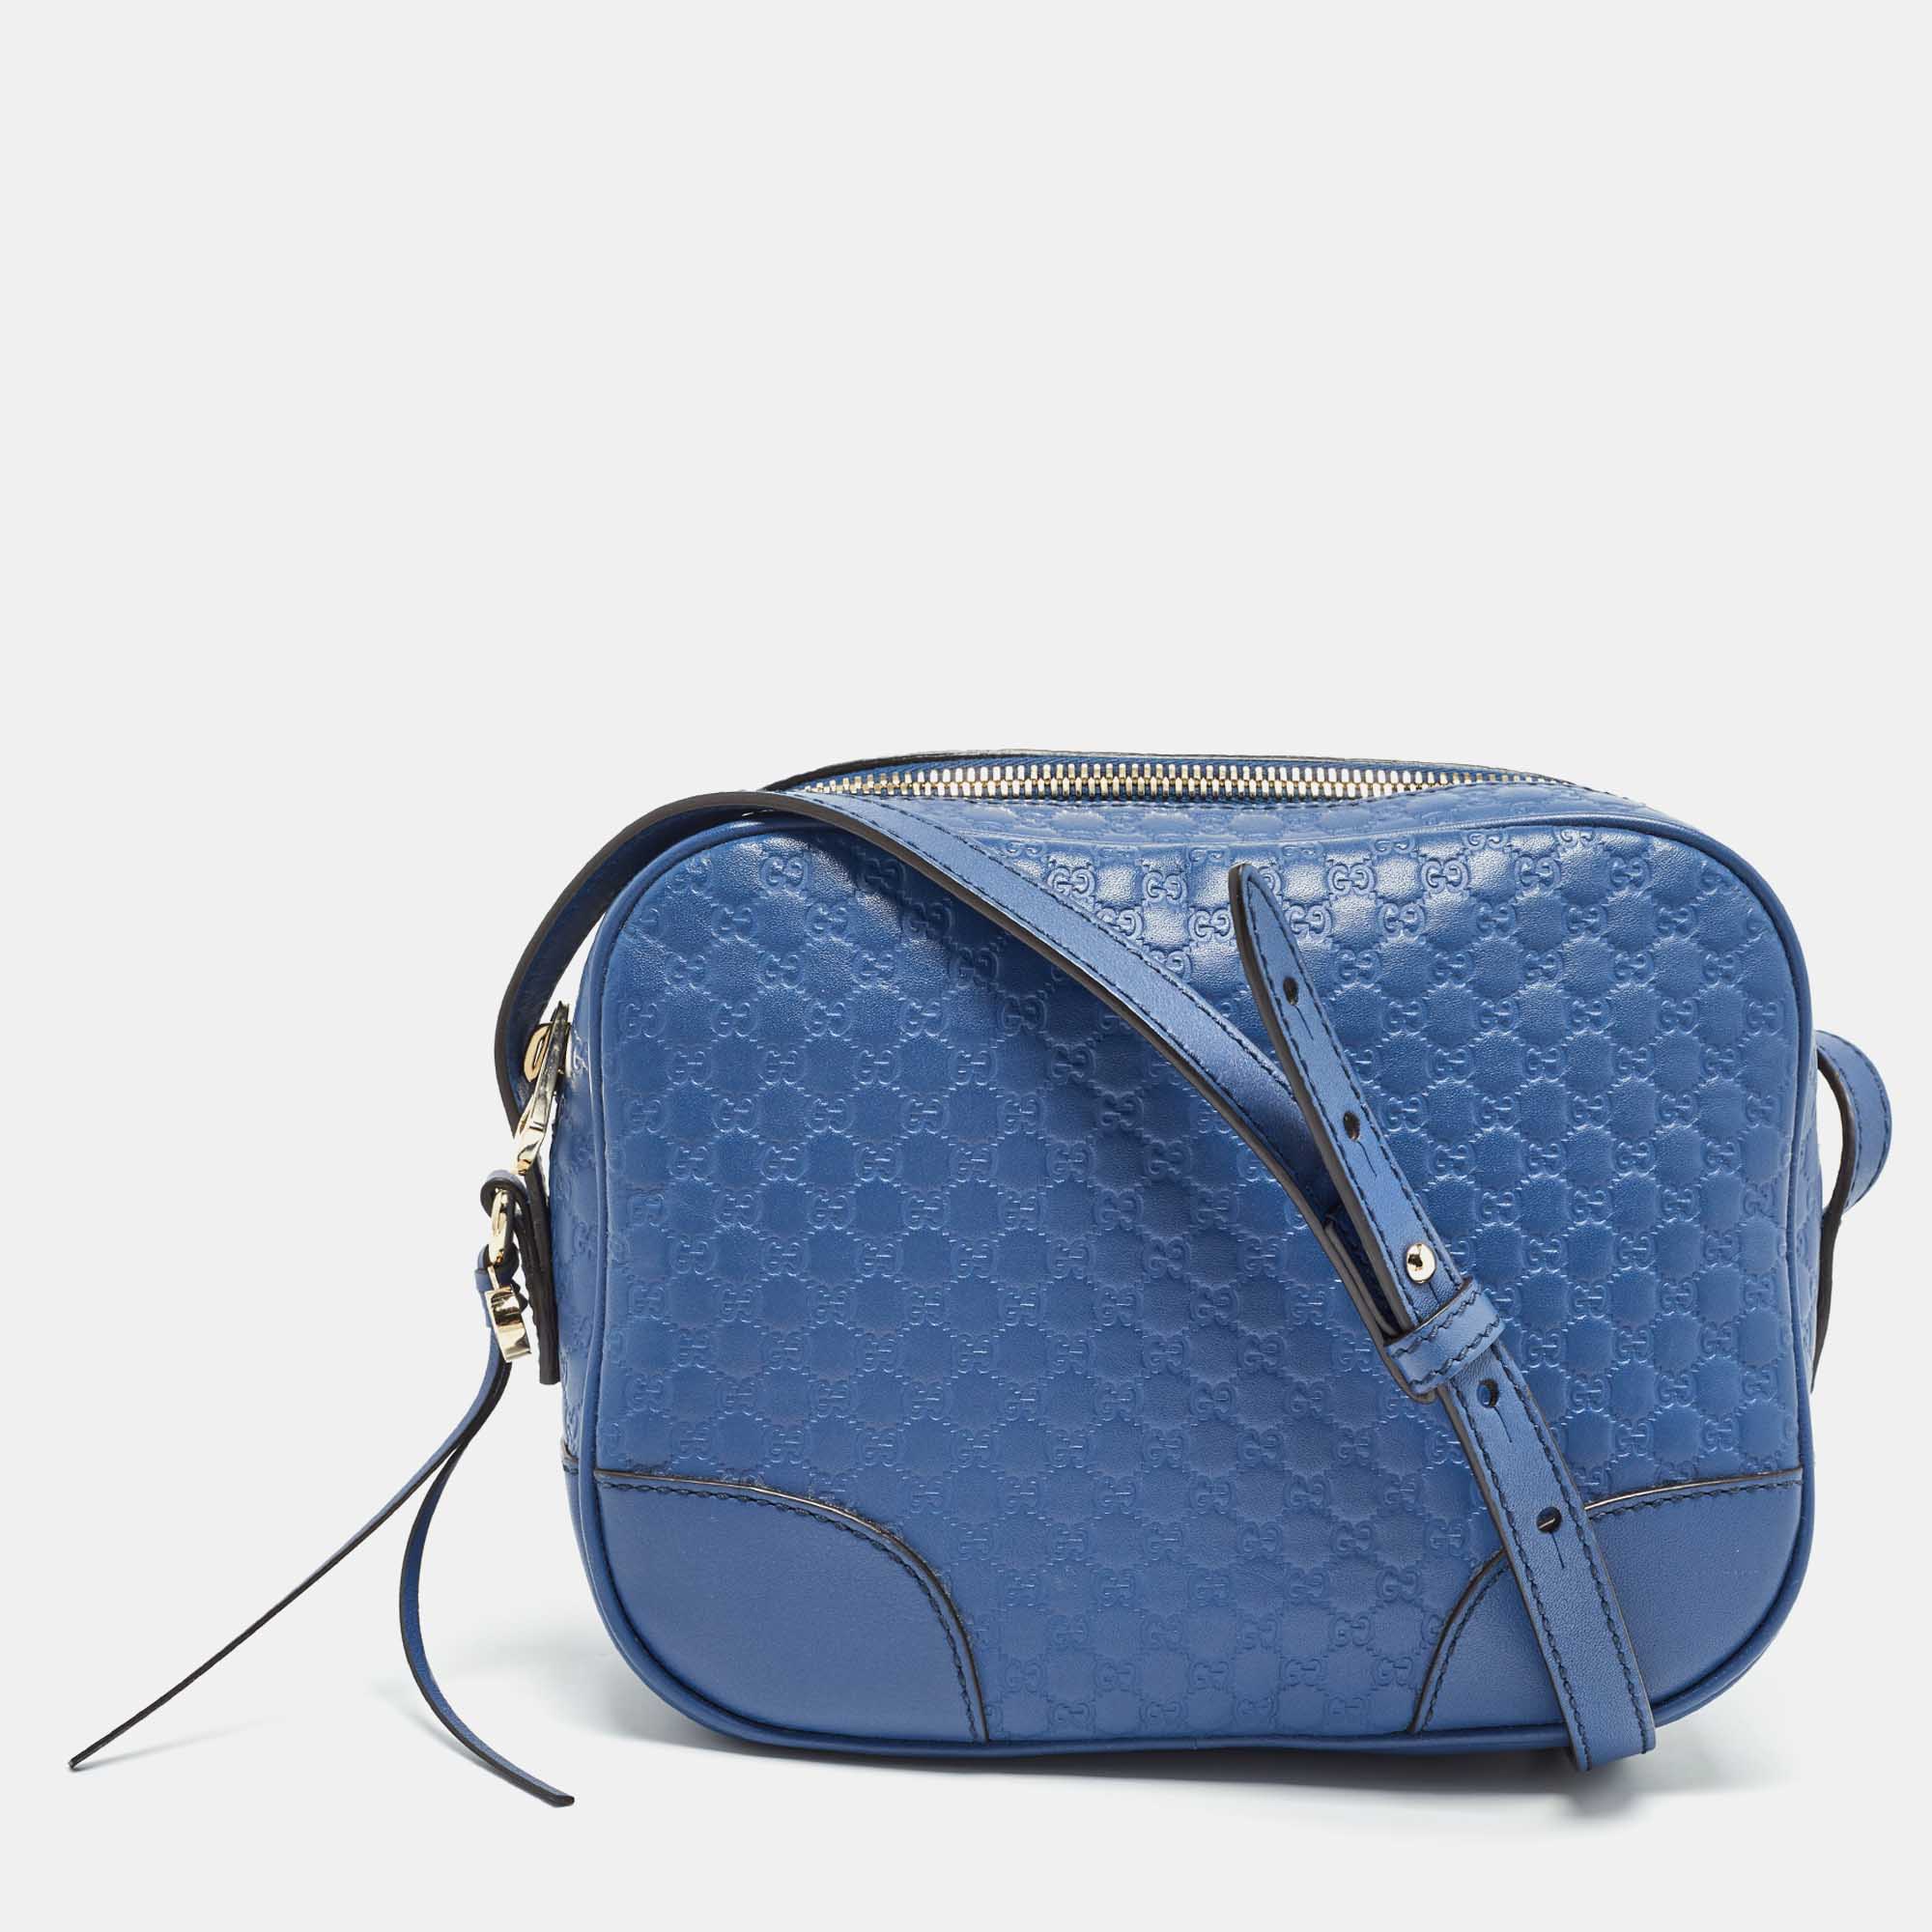 Gucci blue micro guccissima leather bree crossbody bag